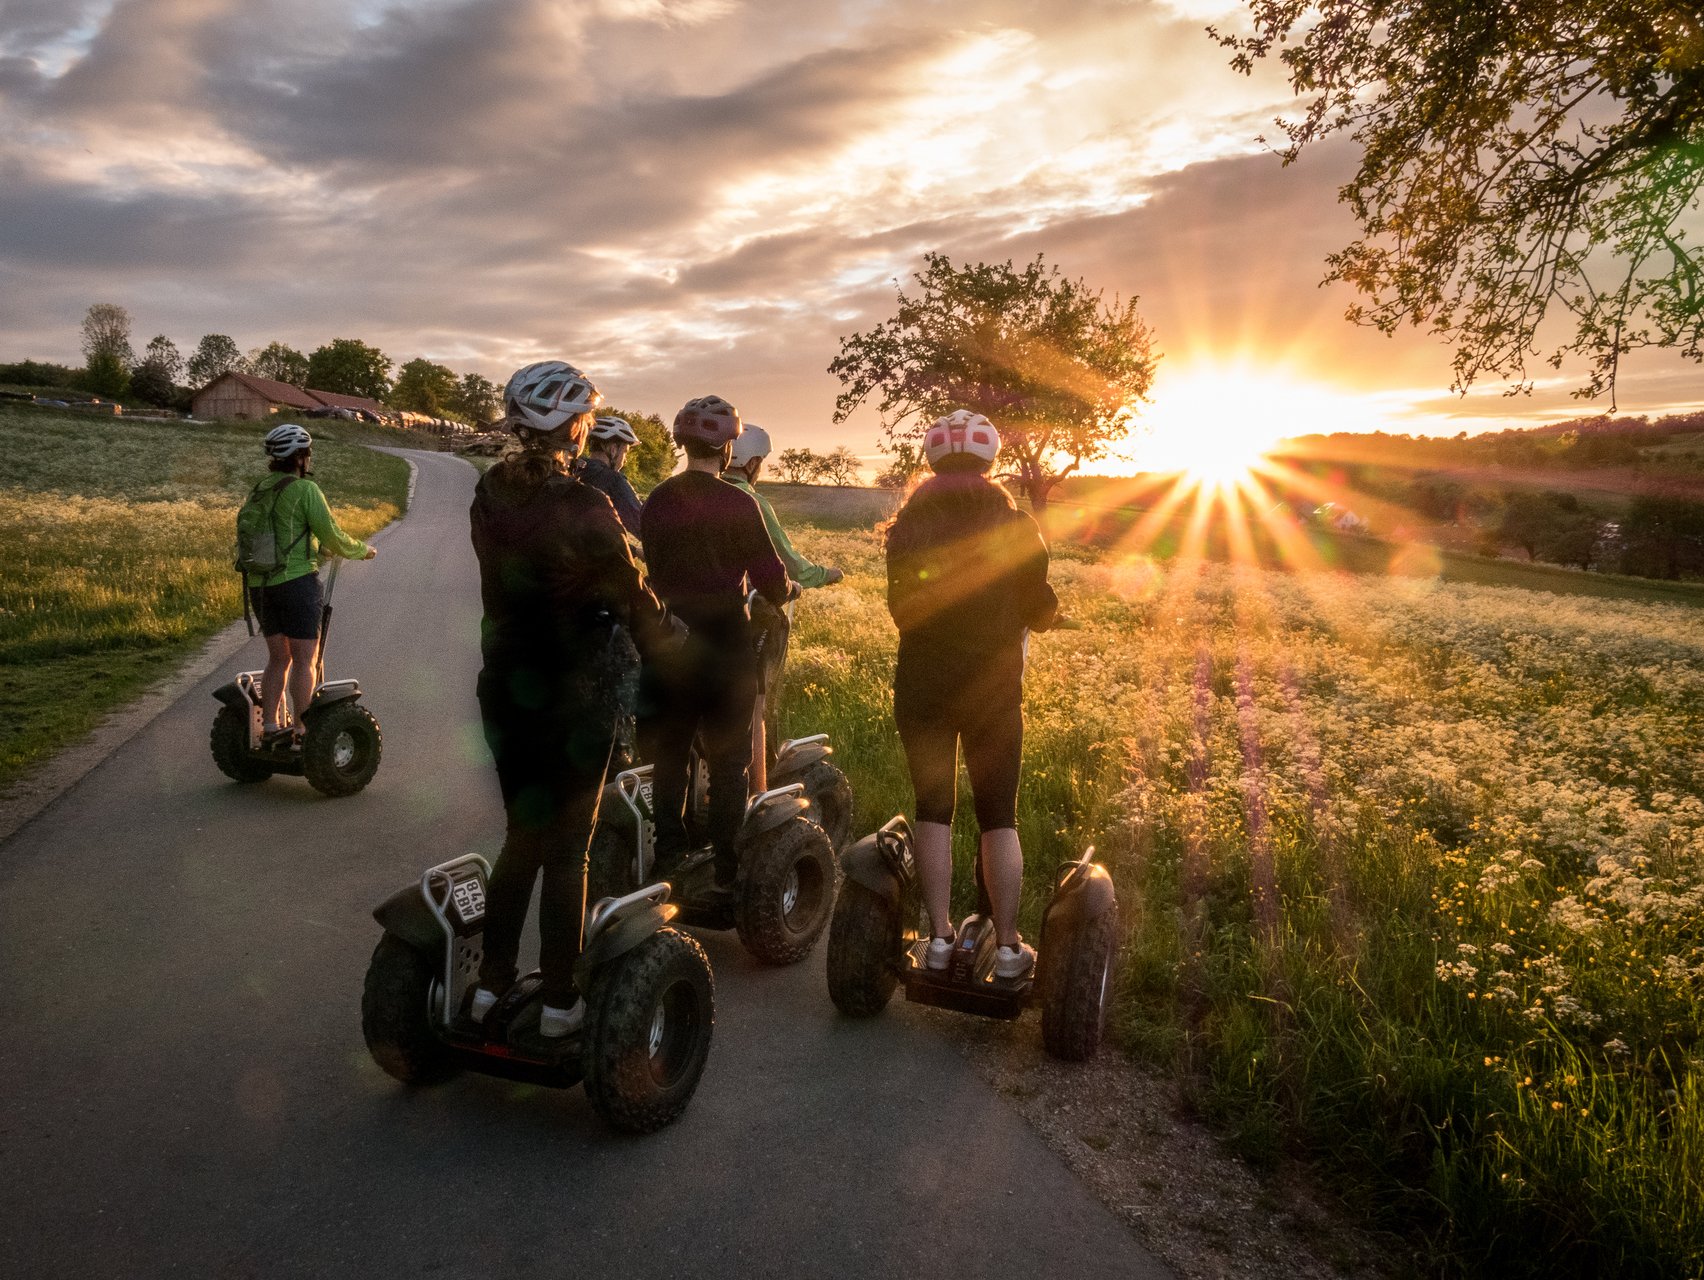 Segway Touren rund um Münsingen im Biosphärengebiet Schwäbische Alb. Eine Grupee steht mit Segways auf einem Teerweg und beobachten den Sonnenuntergang. Die Sonne wirft Strahlen über blühende Sommerwiesen. Alle tragen Helme.